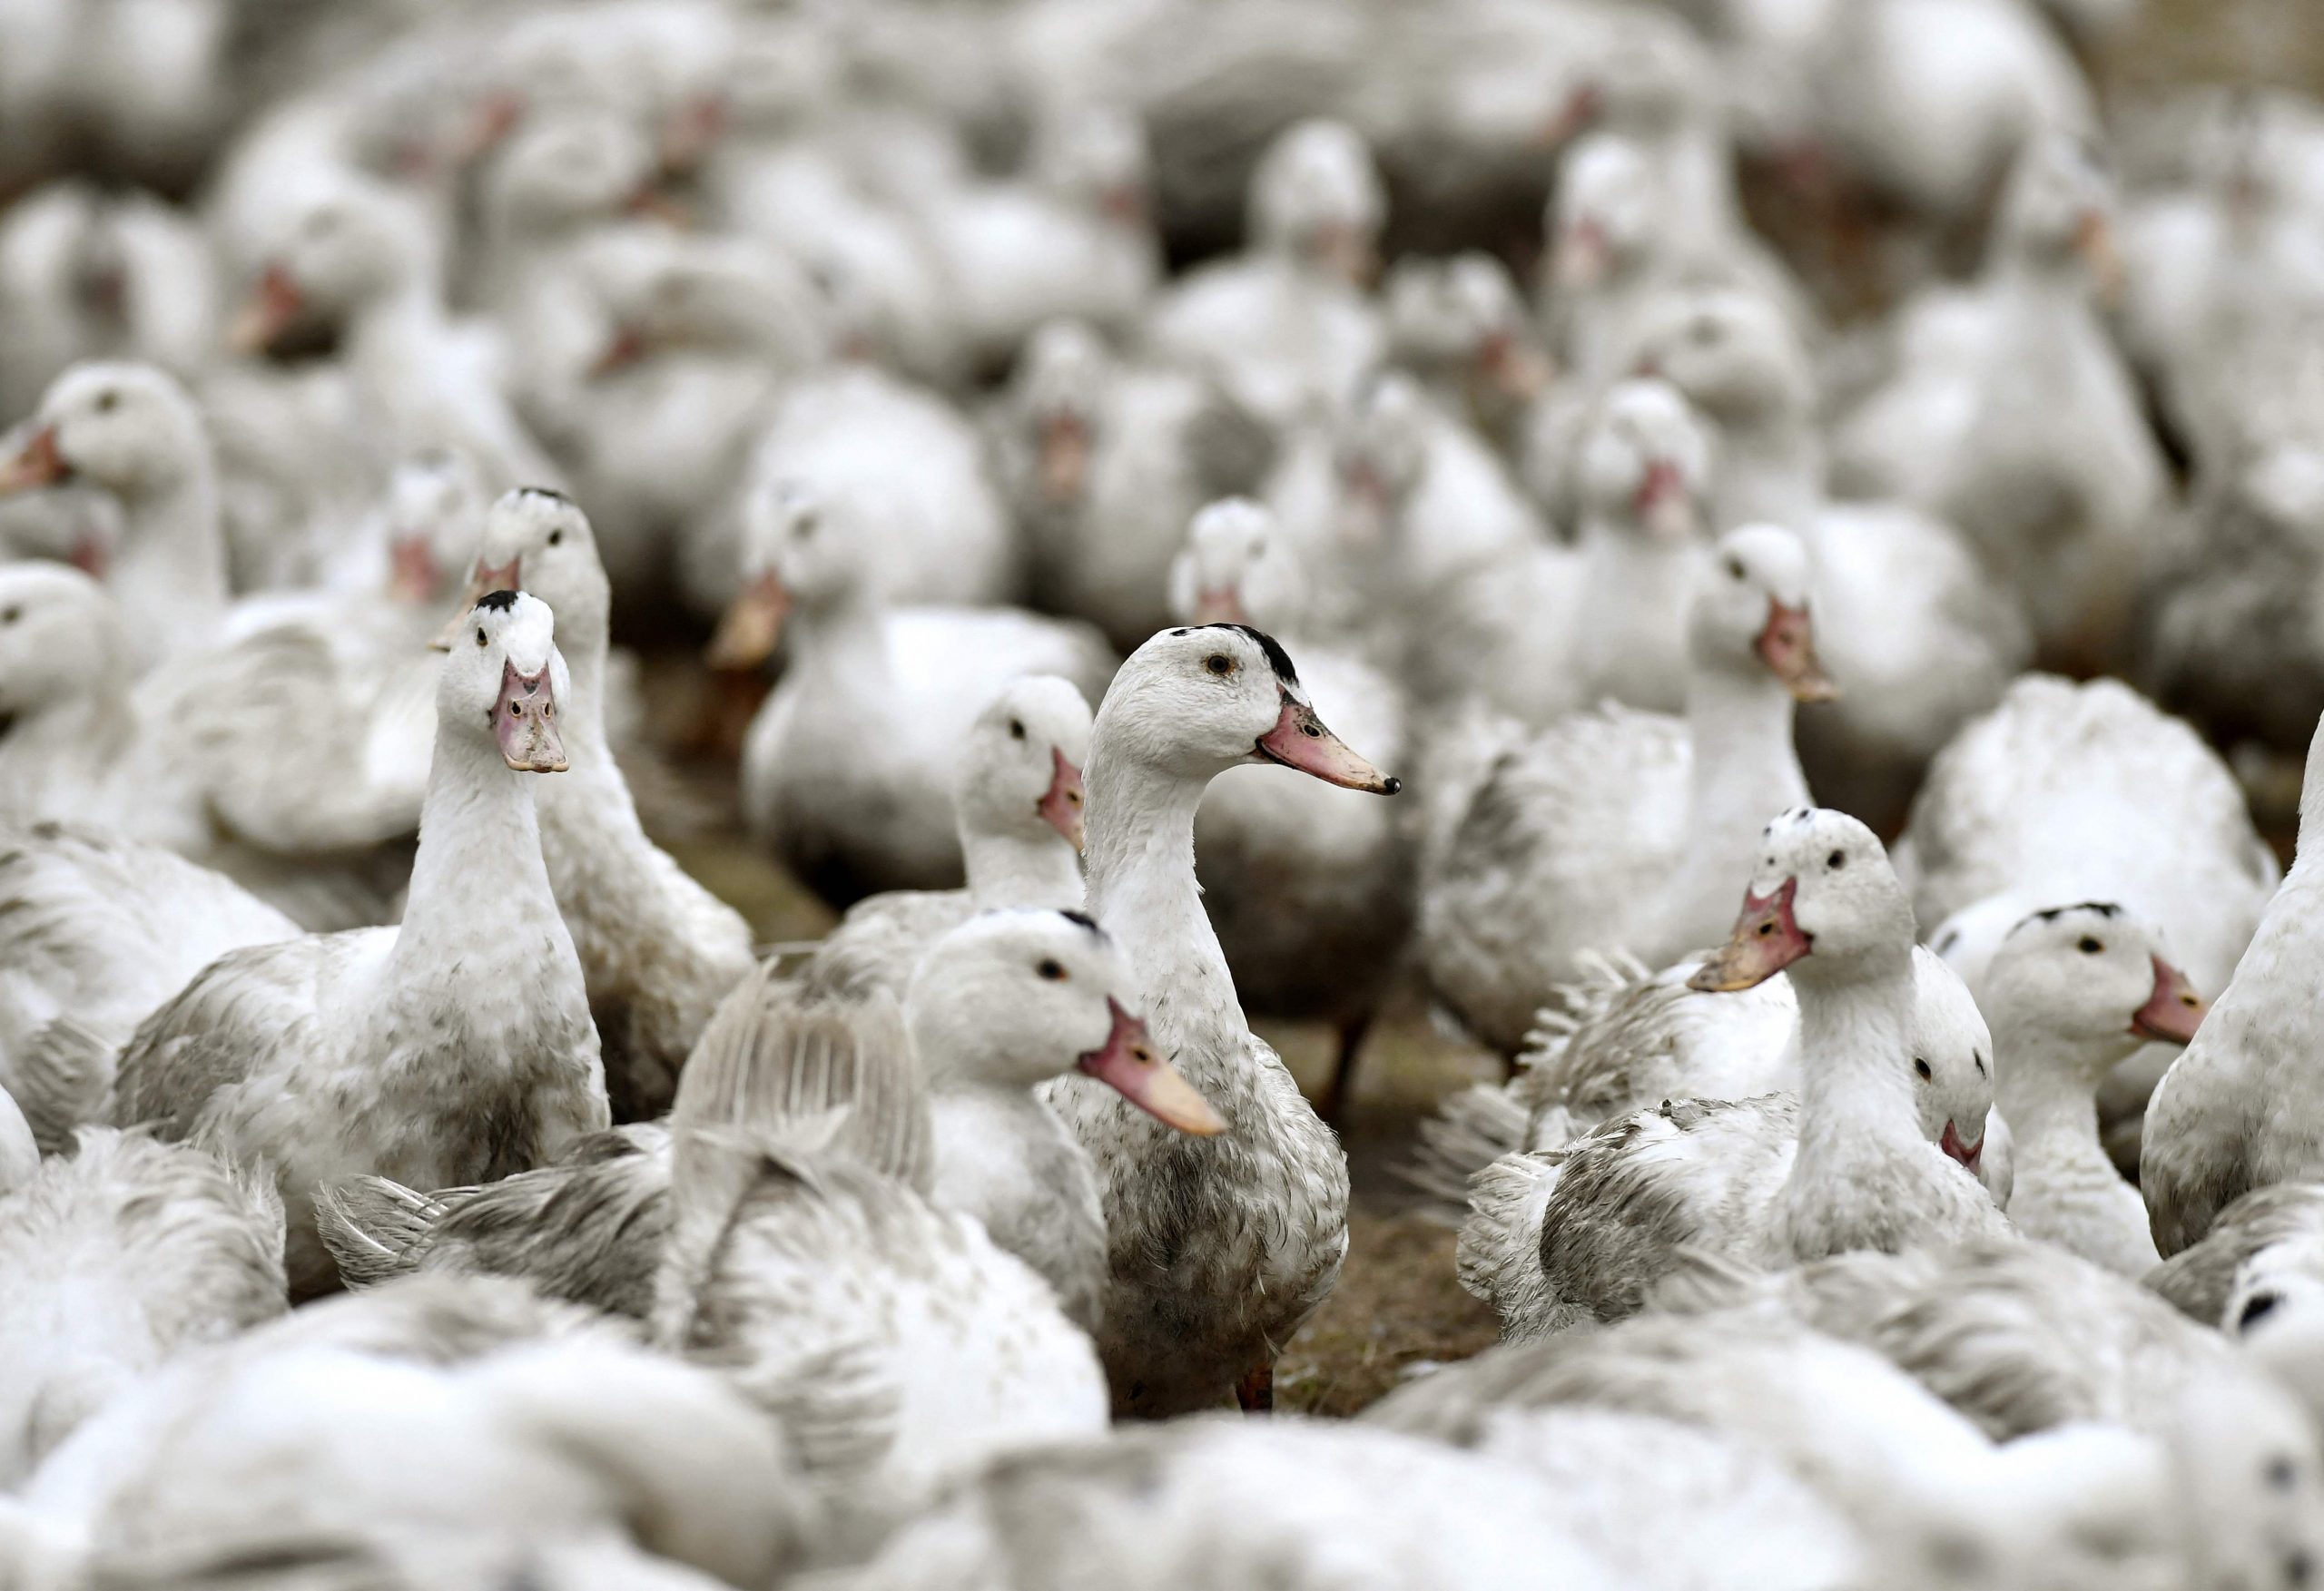 欧洲禽流感病例增加 法国调升风险警报到最高级